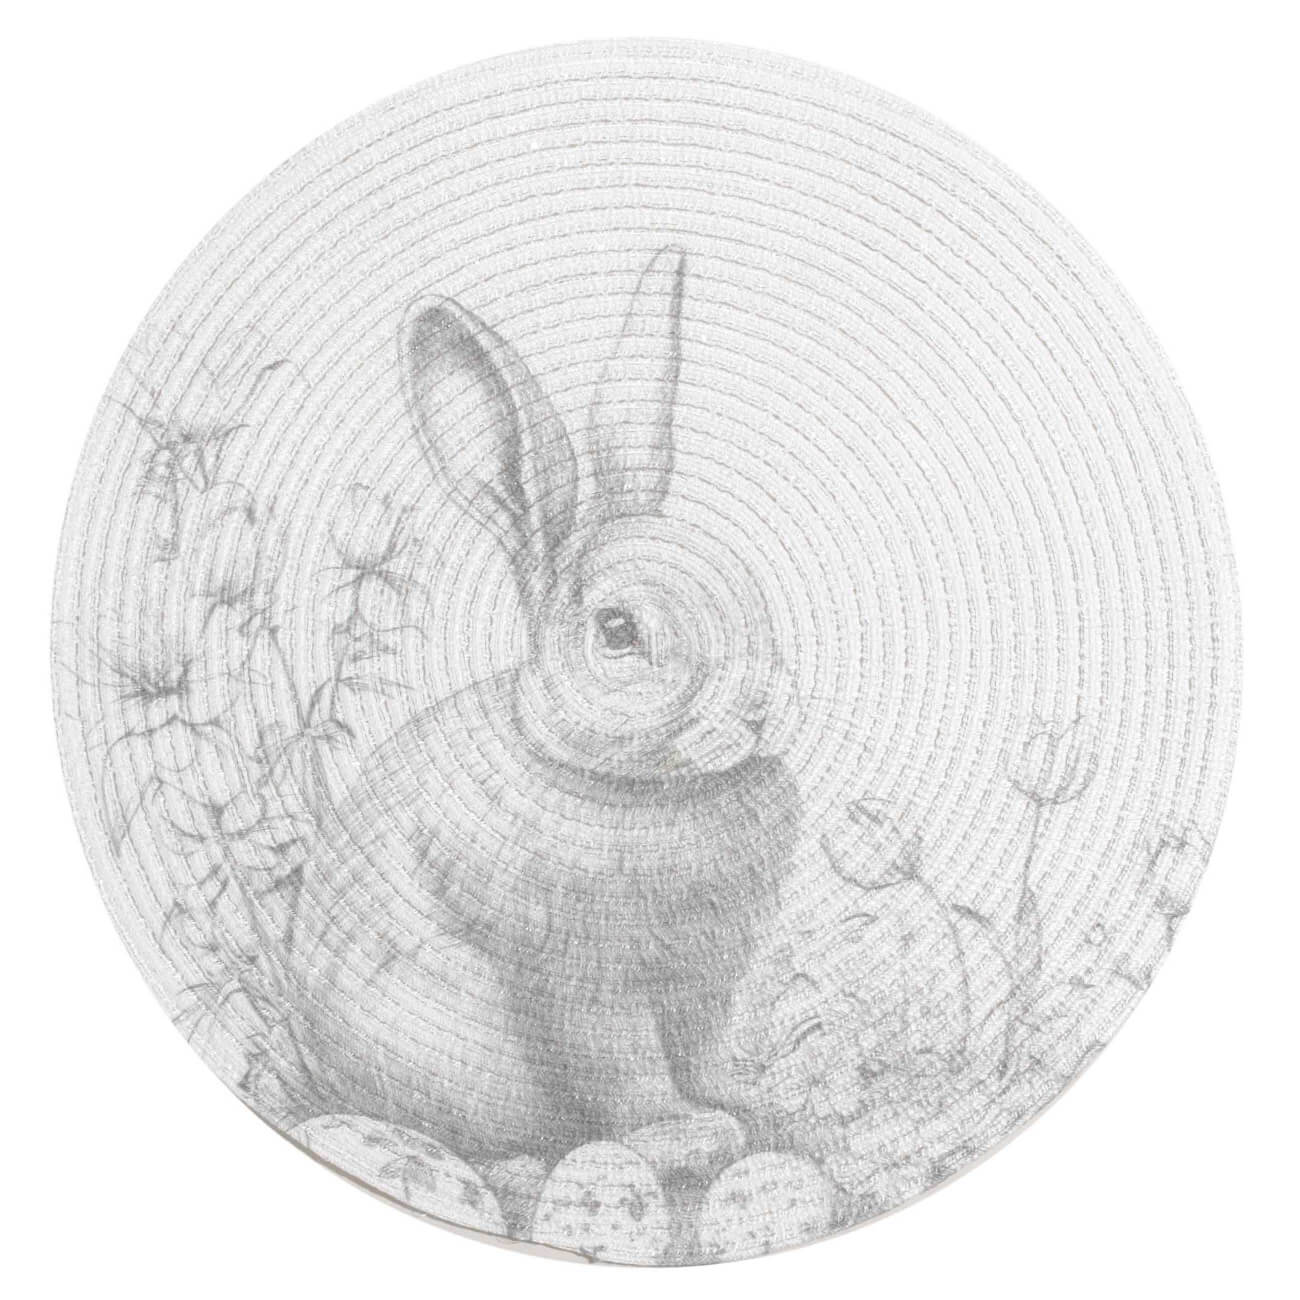 Салфетка под приборы, 38 см, полиэстер, круглая, белая, Графичный кролик, Rotary print фланелевая салфетка главдор